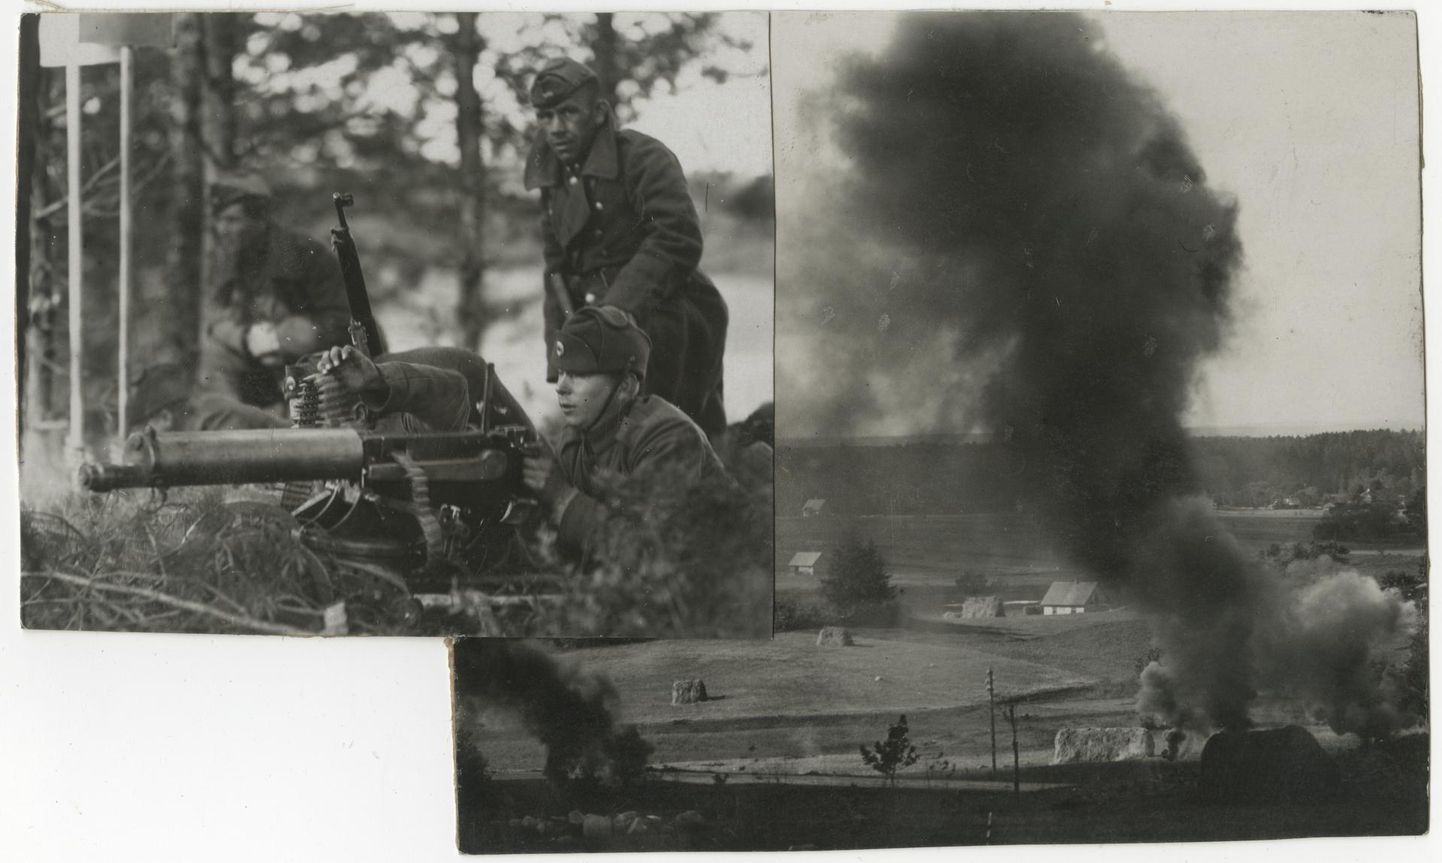 Eesti kaitseväe sõjalised õppused 1920ndatel või 1930ndatel. Vasakul sõdurid raskekuulipildujast tulistamas, paremal plahvatus maastikul.